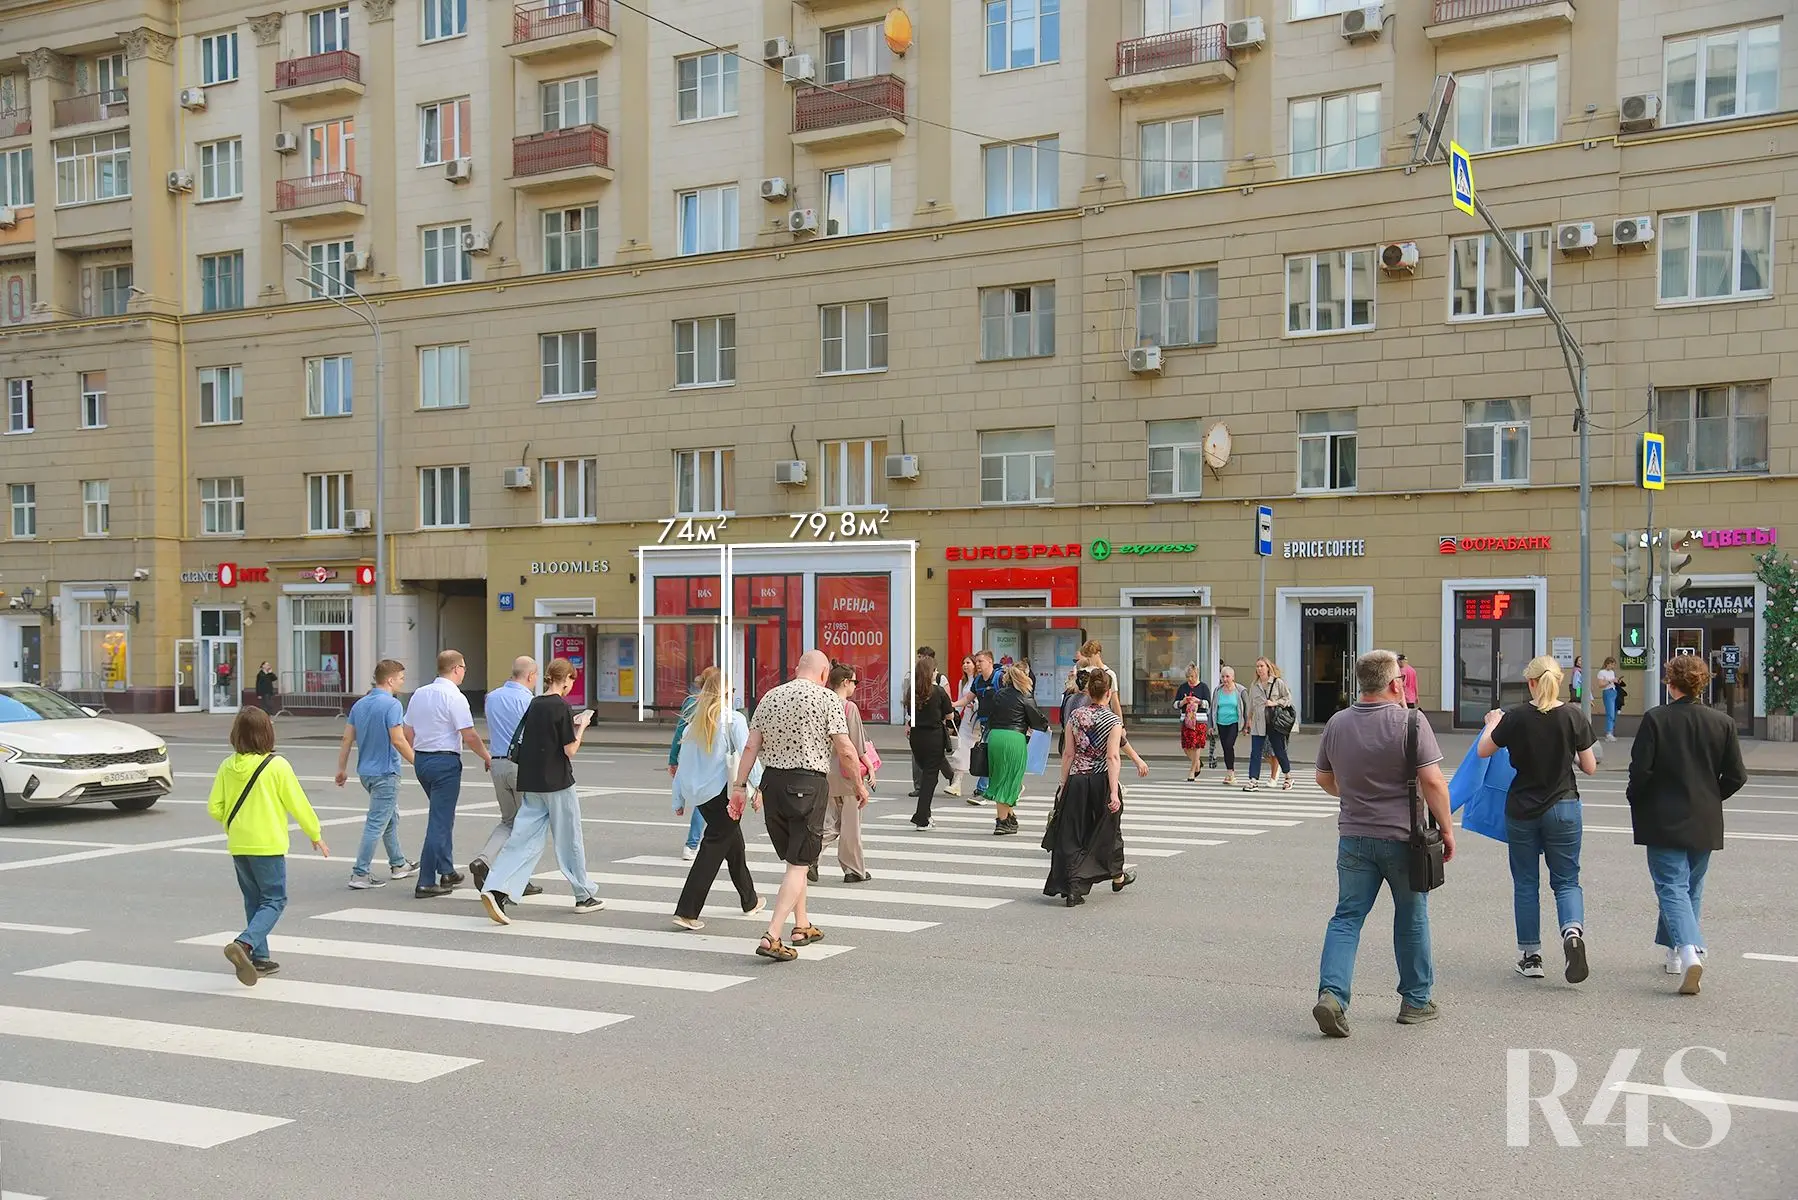 Аренда торговых помещений площадью 74 - 79.8 м2 в Москве:  проспект Мира, 48 R4S | Realty4Sale